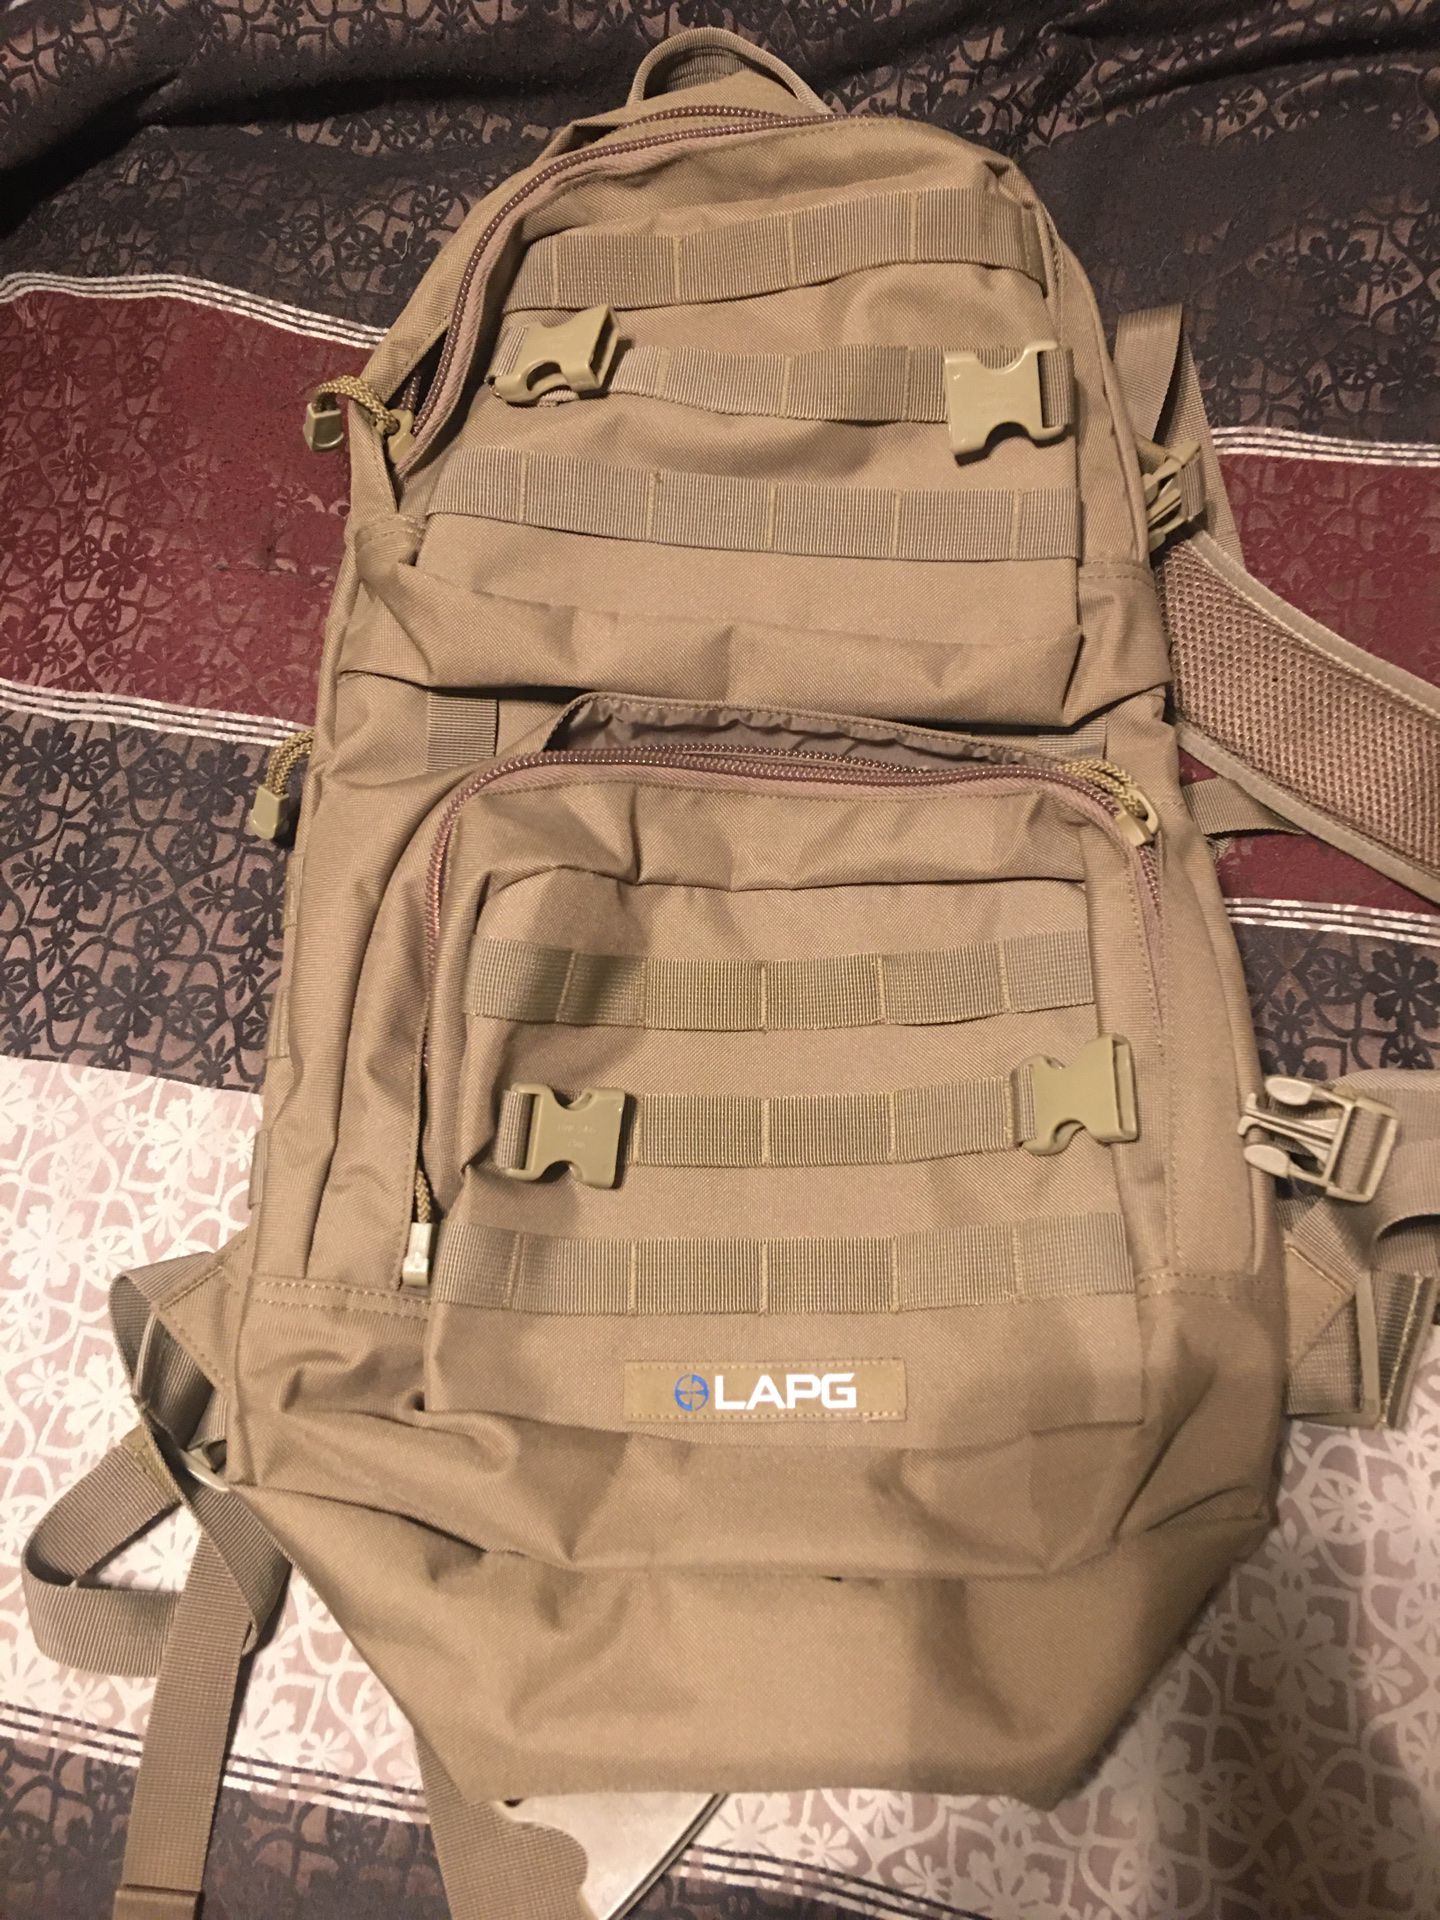 LAPG backpack